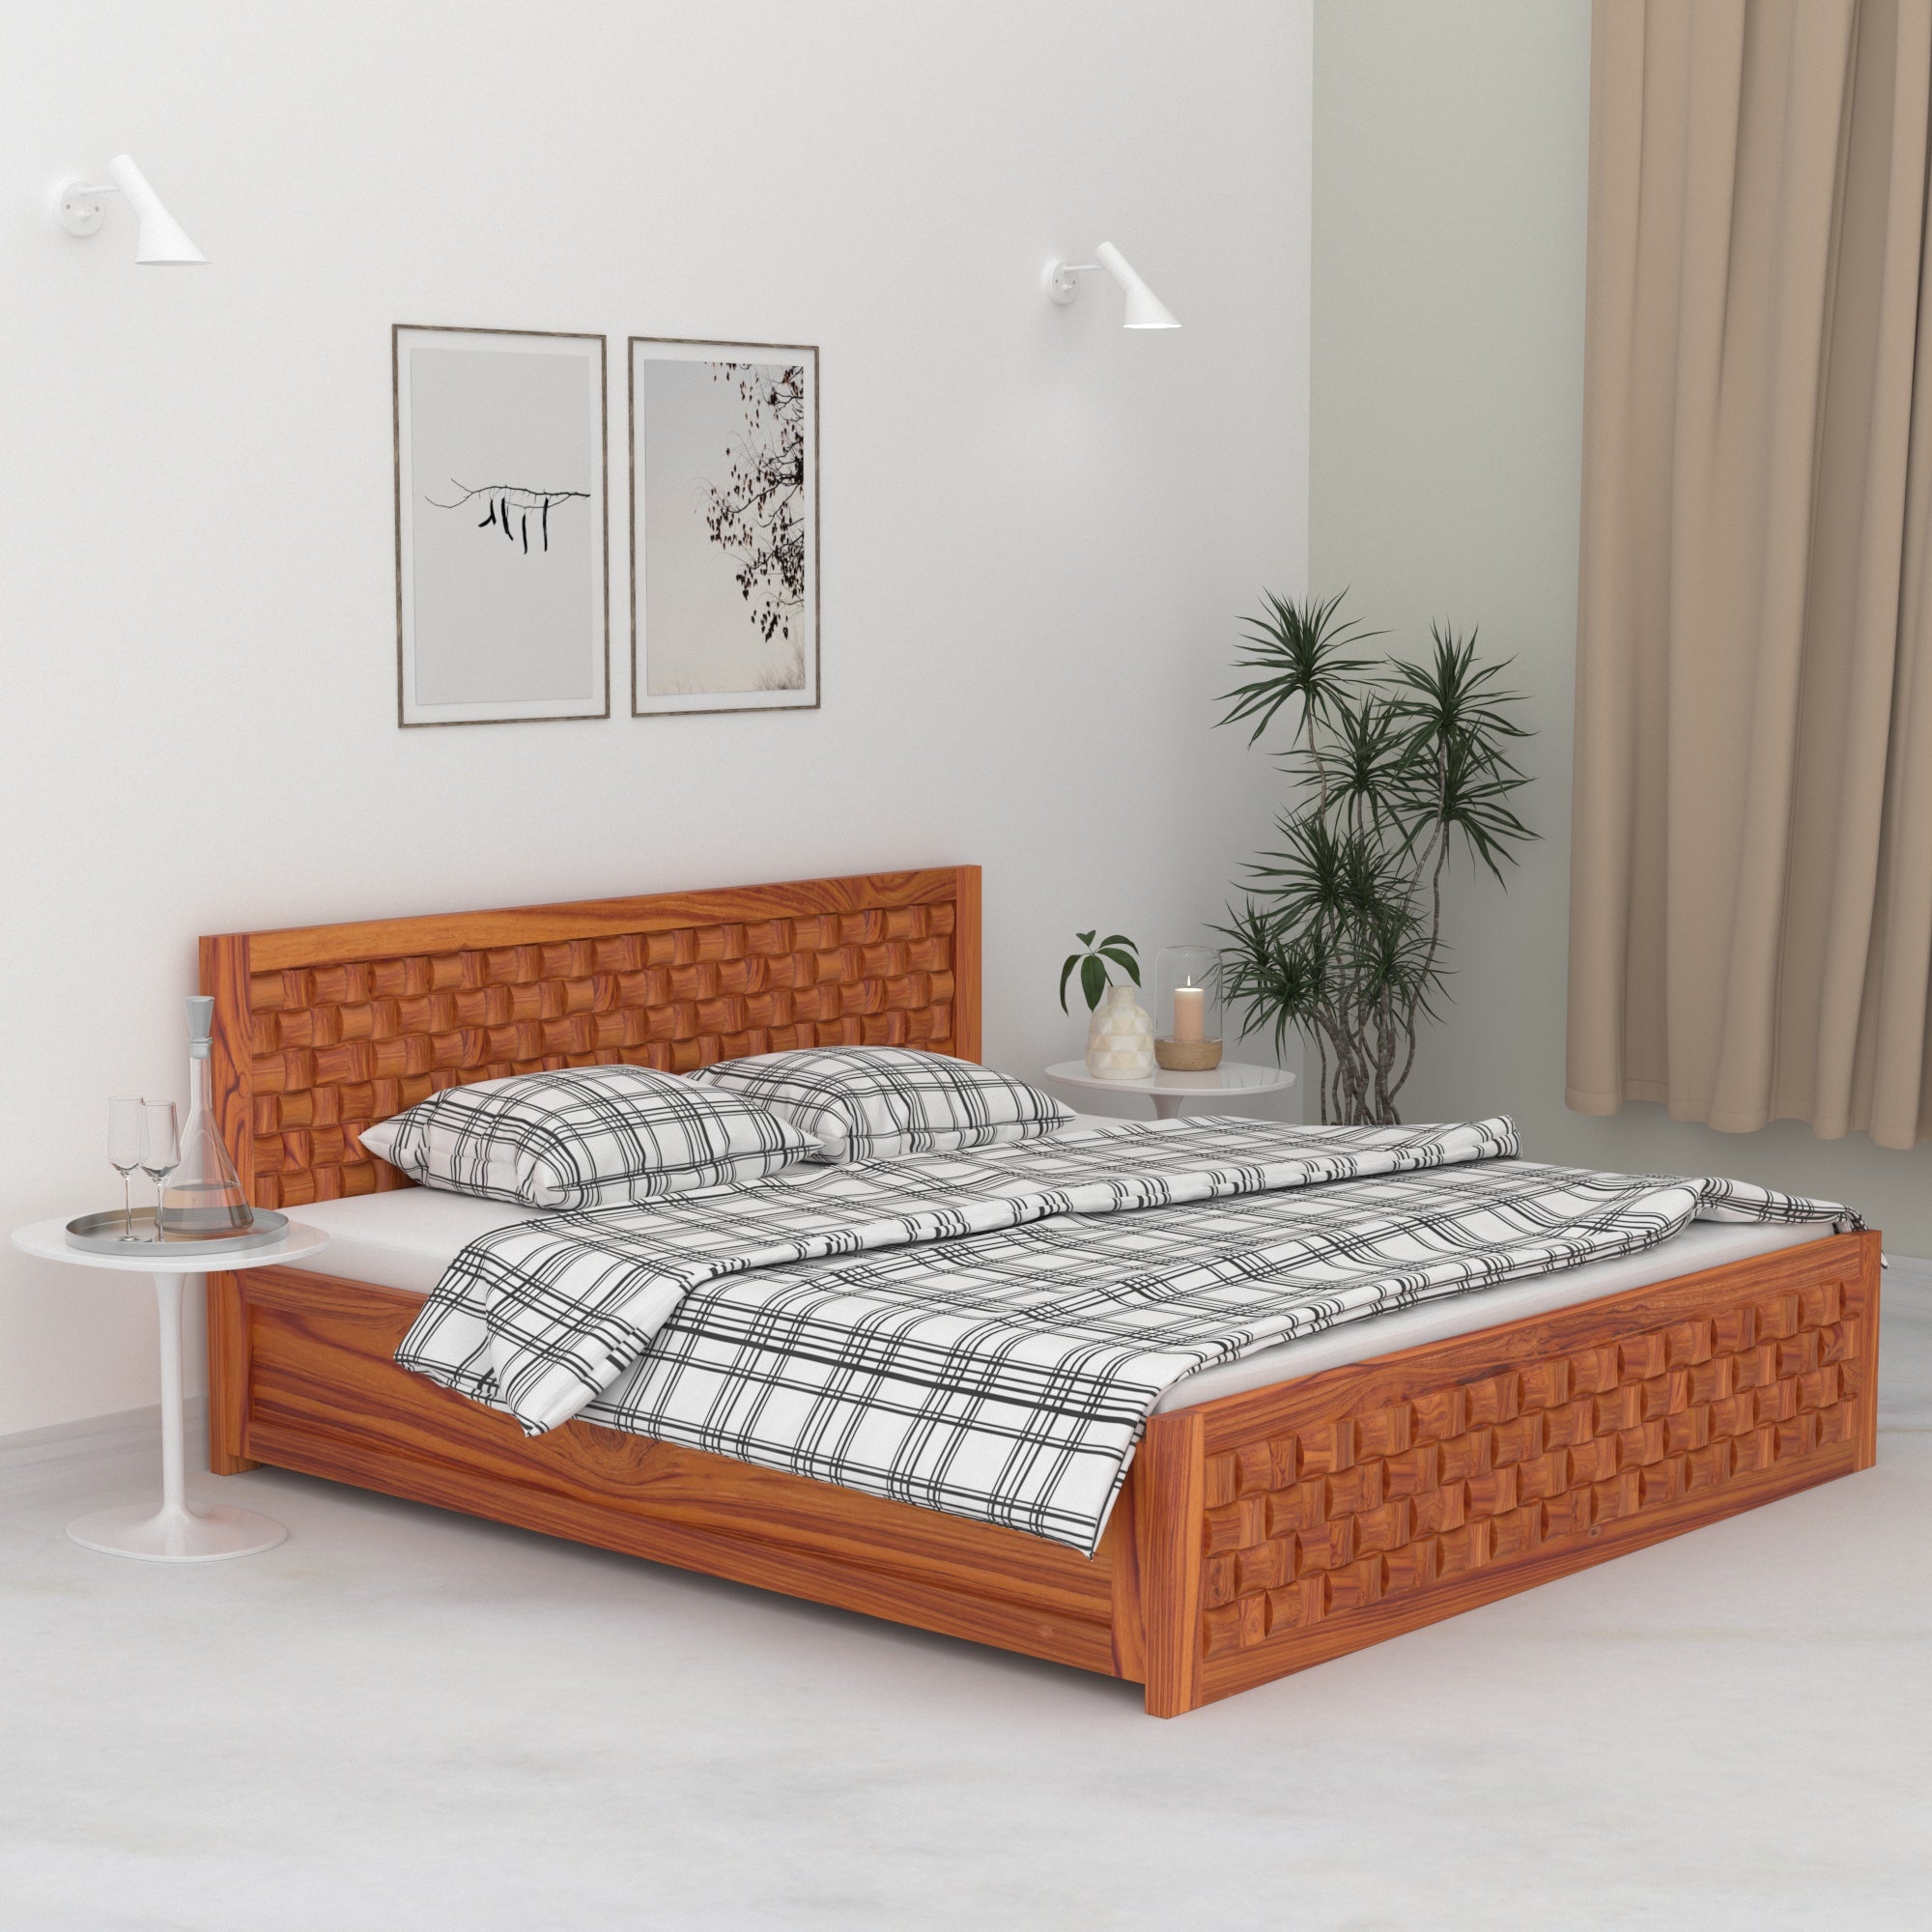 Wooden Regal designed Bed Bed